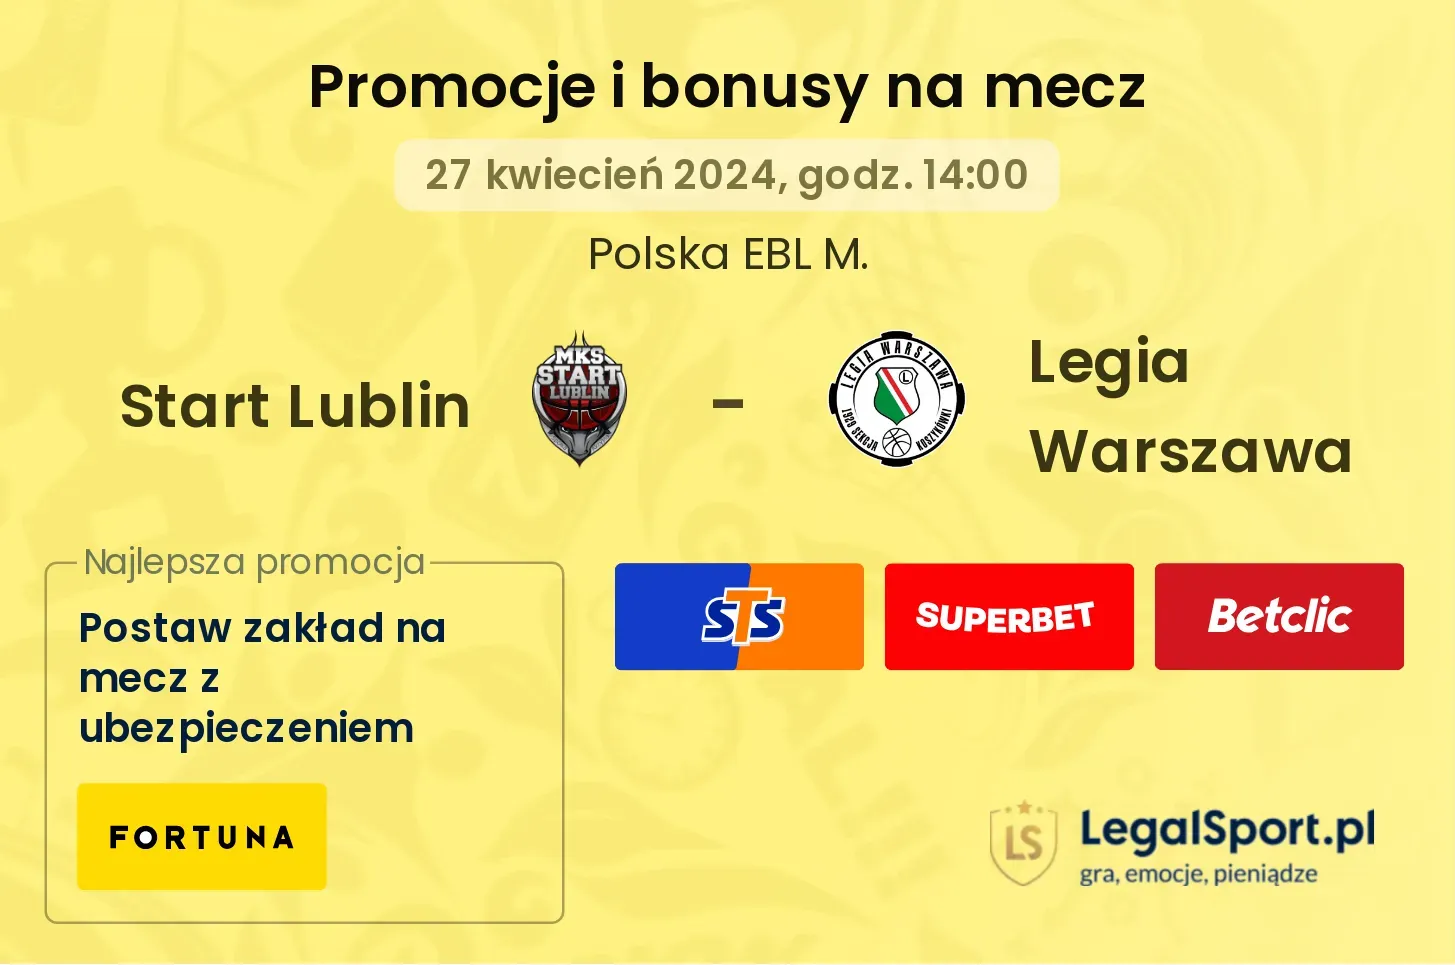 Start Lublin - Legia Warszawa promocje bonusy na mecz